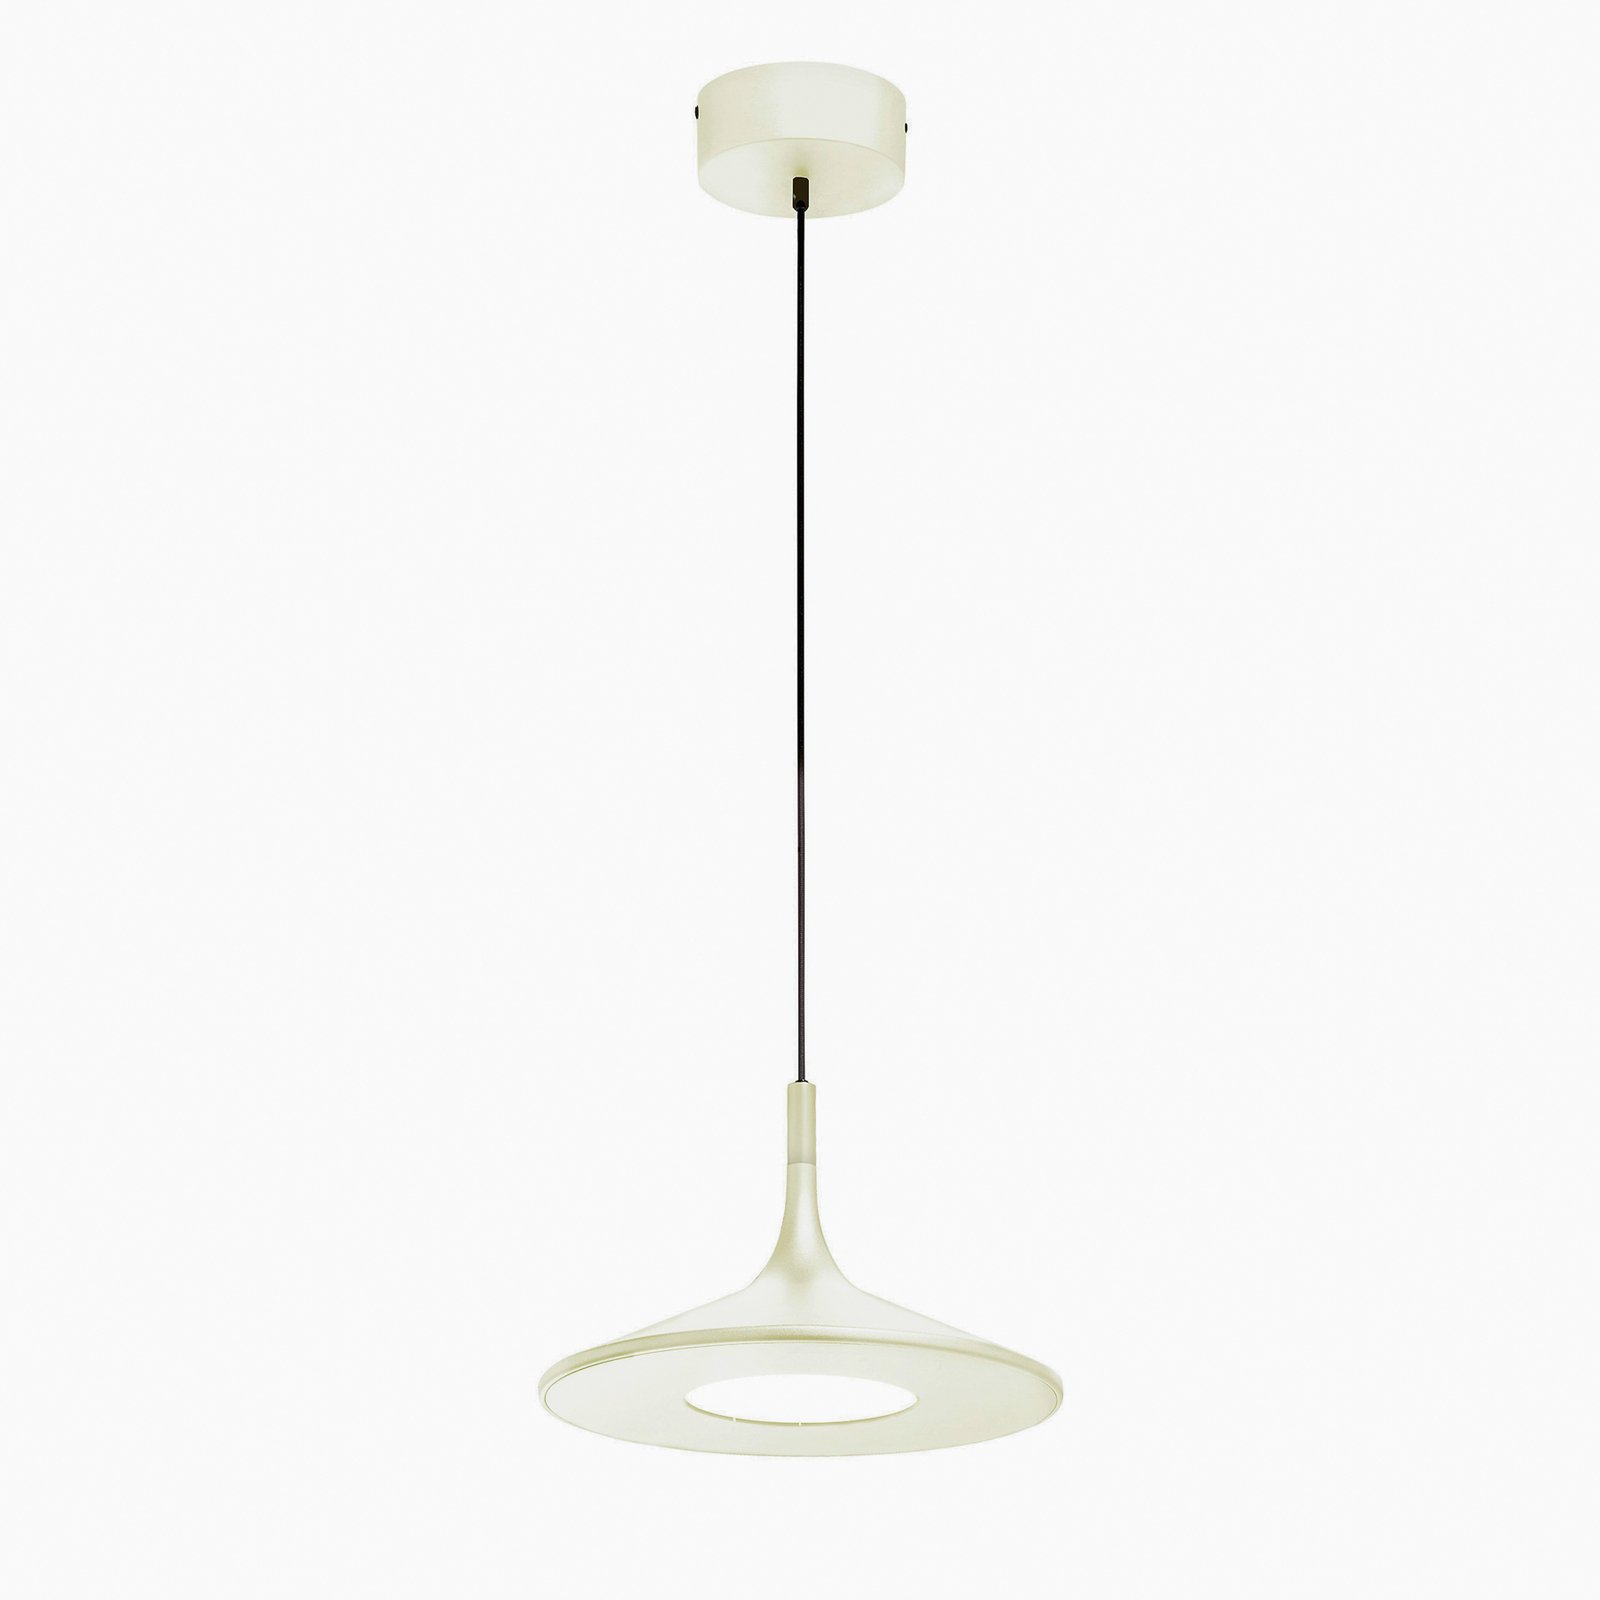 Schöner Wohnen Slim LED hanging light, white